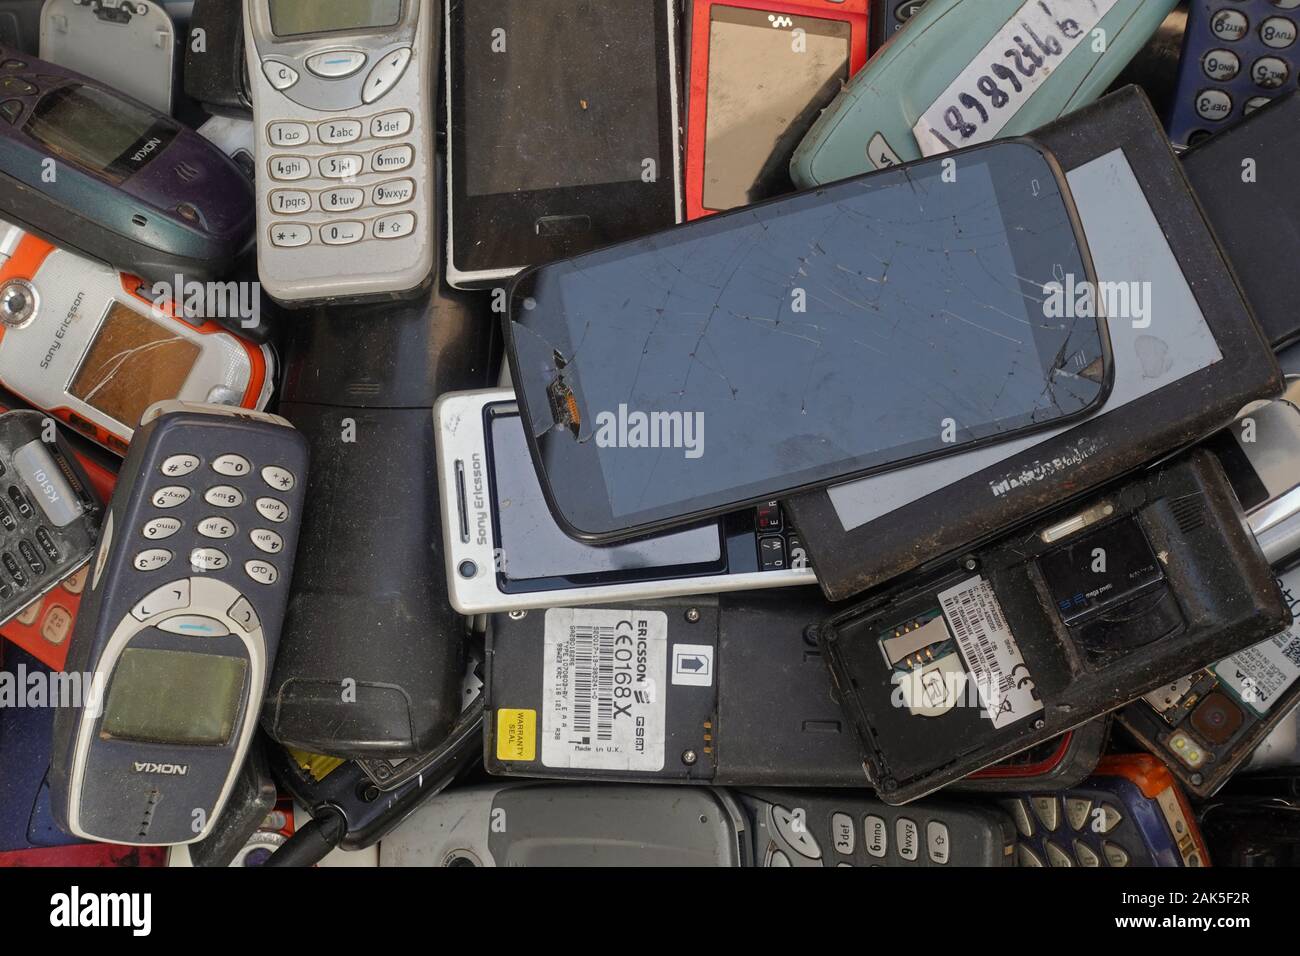 Athènes, Grèce - 18 octobre 2019 : de vieux téléphones cellulaires et téléphones intelligents cassé vintage téléphones mobiles à junk shop. Banque D'Images